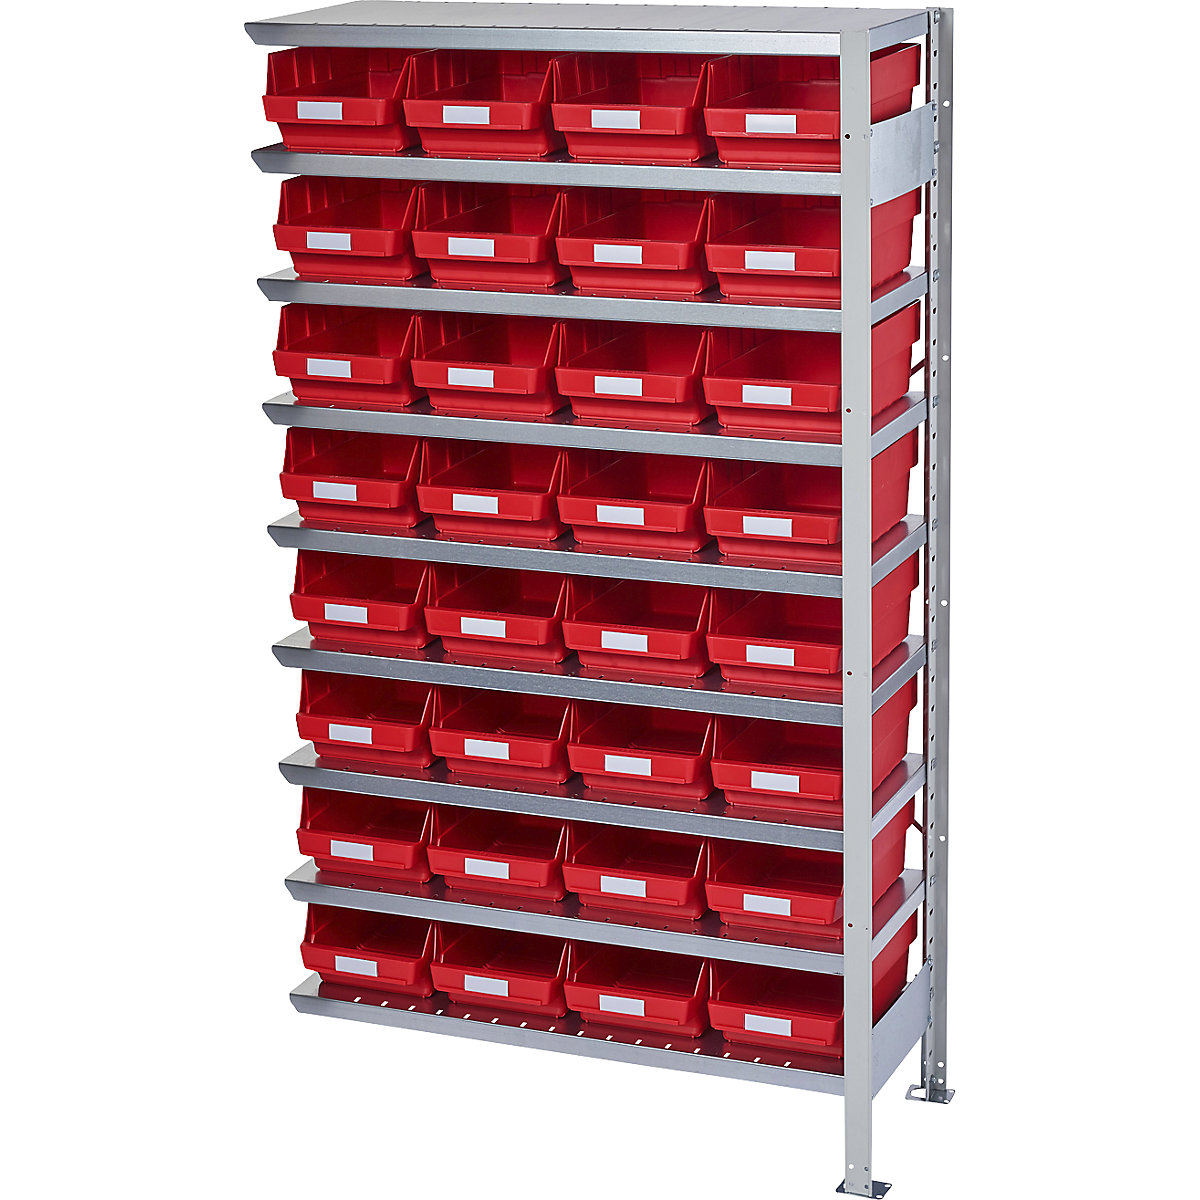 Összedugaszolós állvány dobozokkal – STEMO, állványmagasság 1790 mm, bővítő állvány, 400 mm mély, 32 piros doboz-35